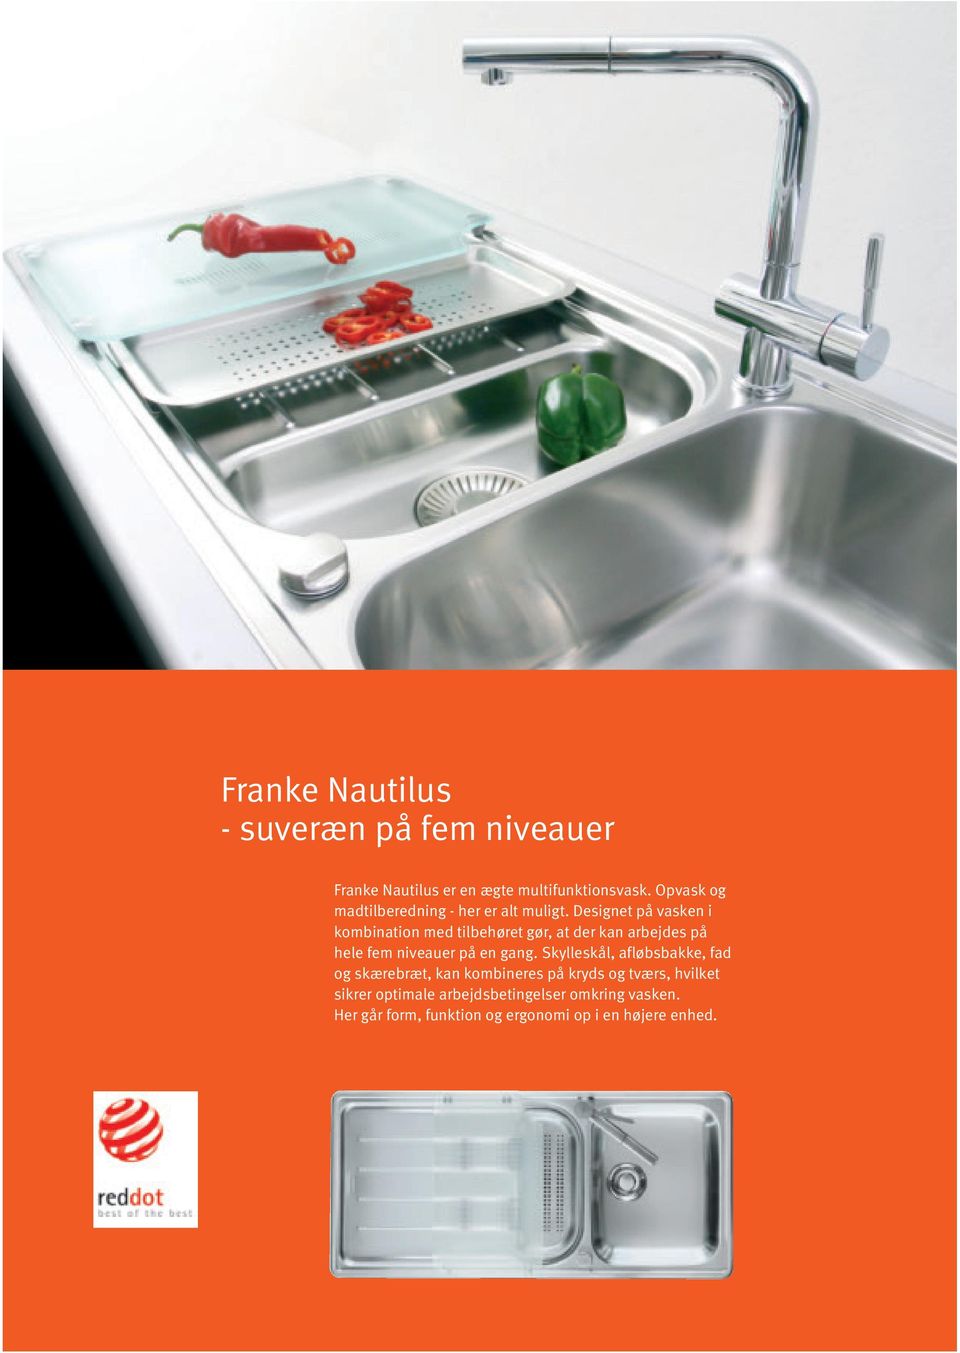 Franke Hovedkatalog Vaske - Affaldssystemer - Armaturer - PDF Free Download